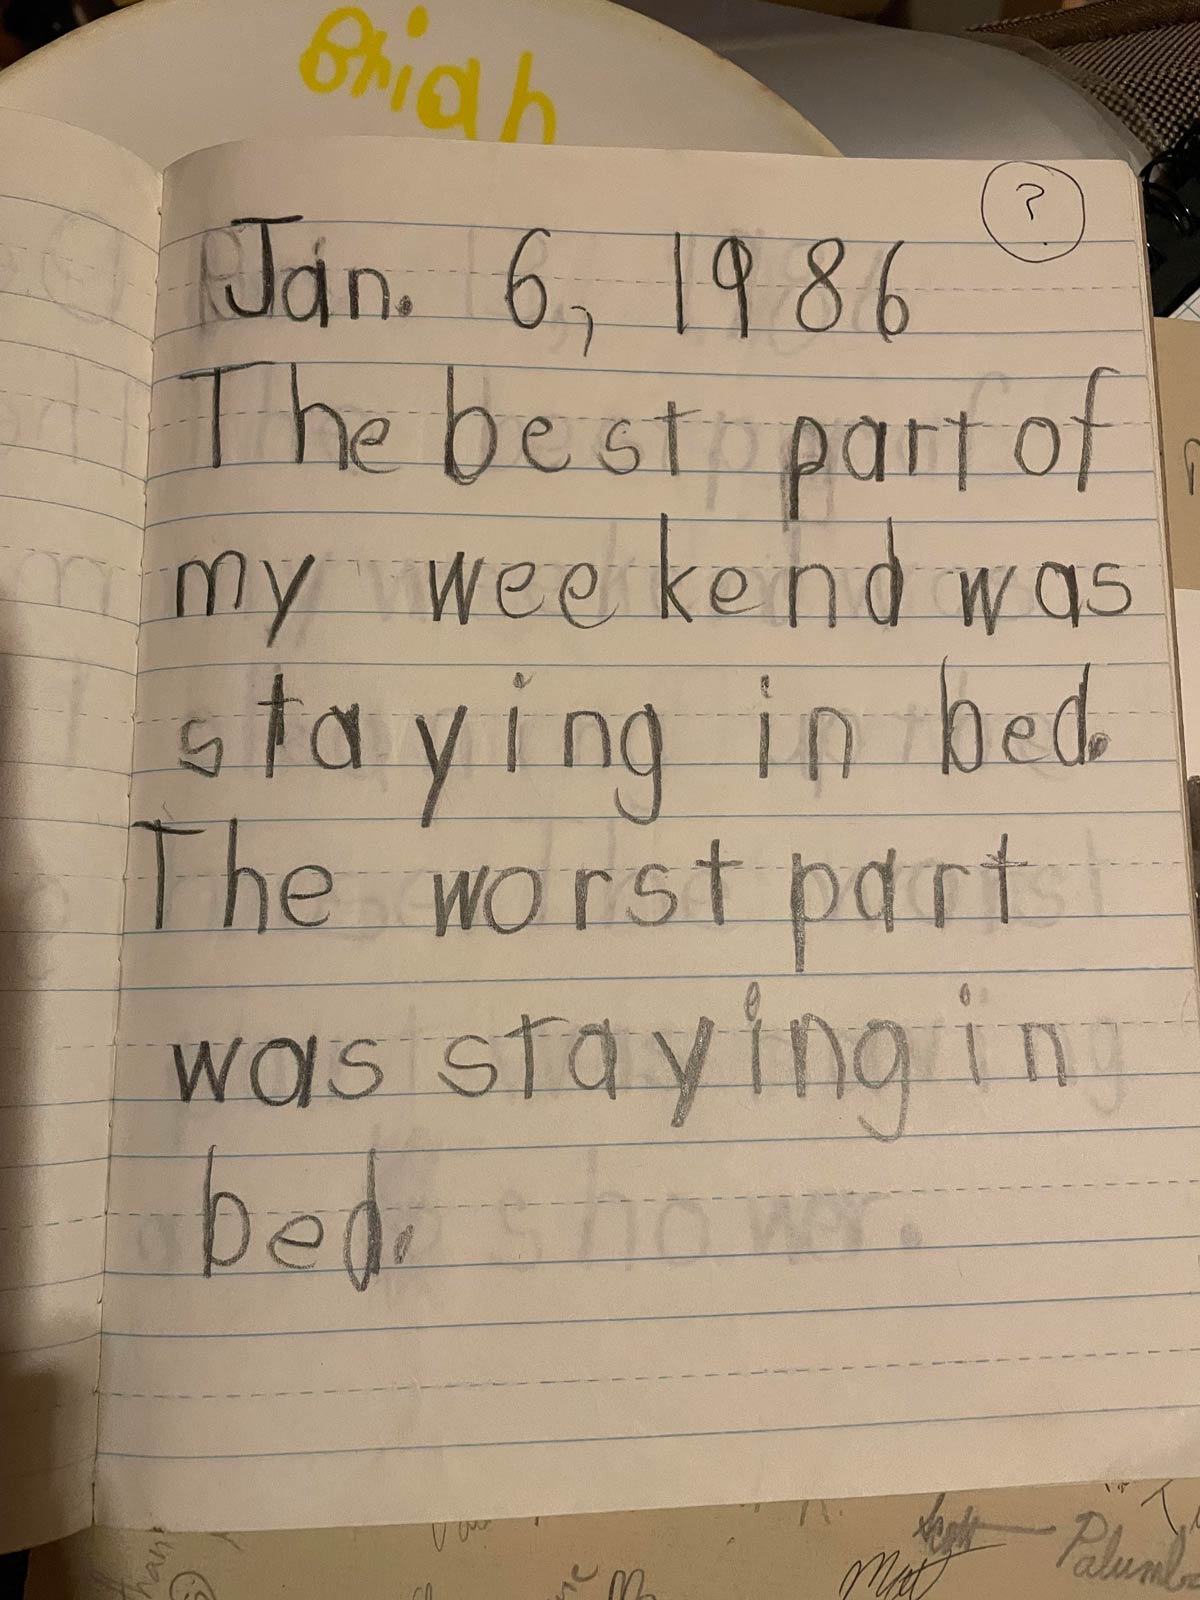 I think I peaked philosophically at age 6